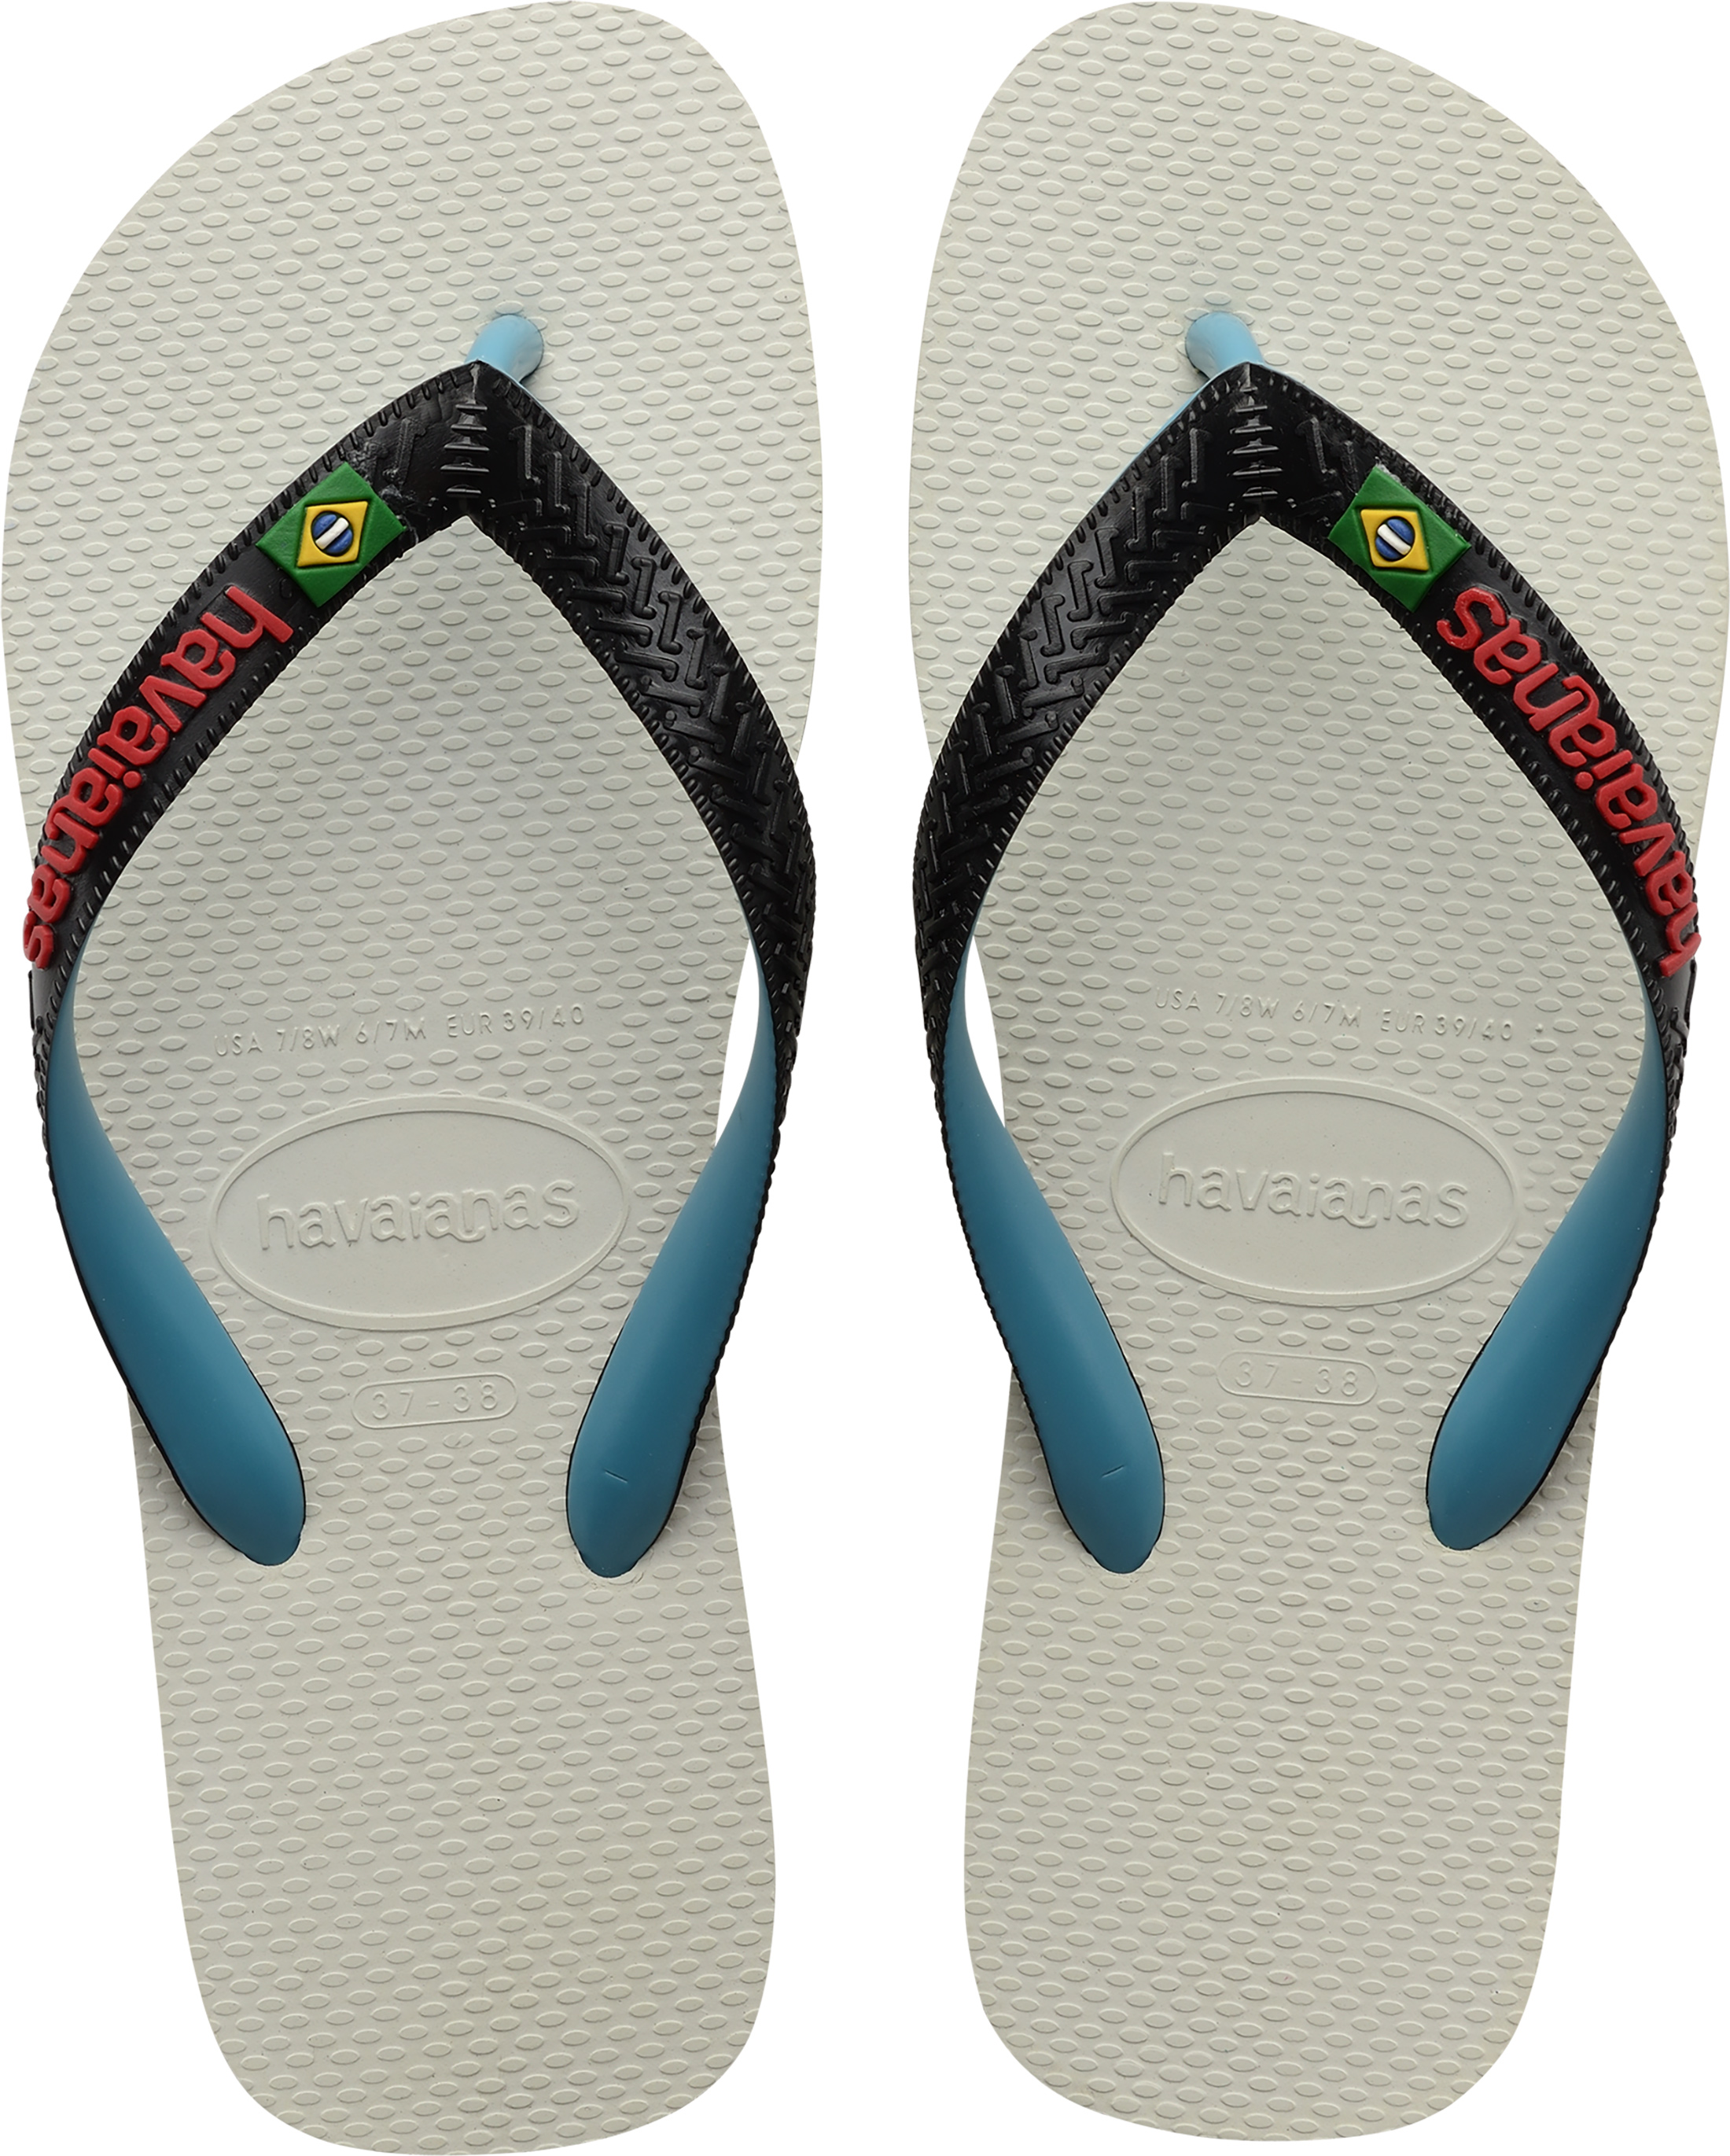 MultiColor Size 13.0 US Havaianas Havaianas Mens 3E09 Sandals & Flip Flops 12 UK 